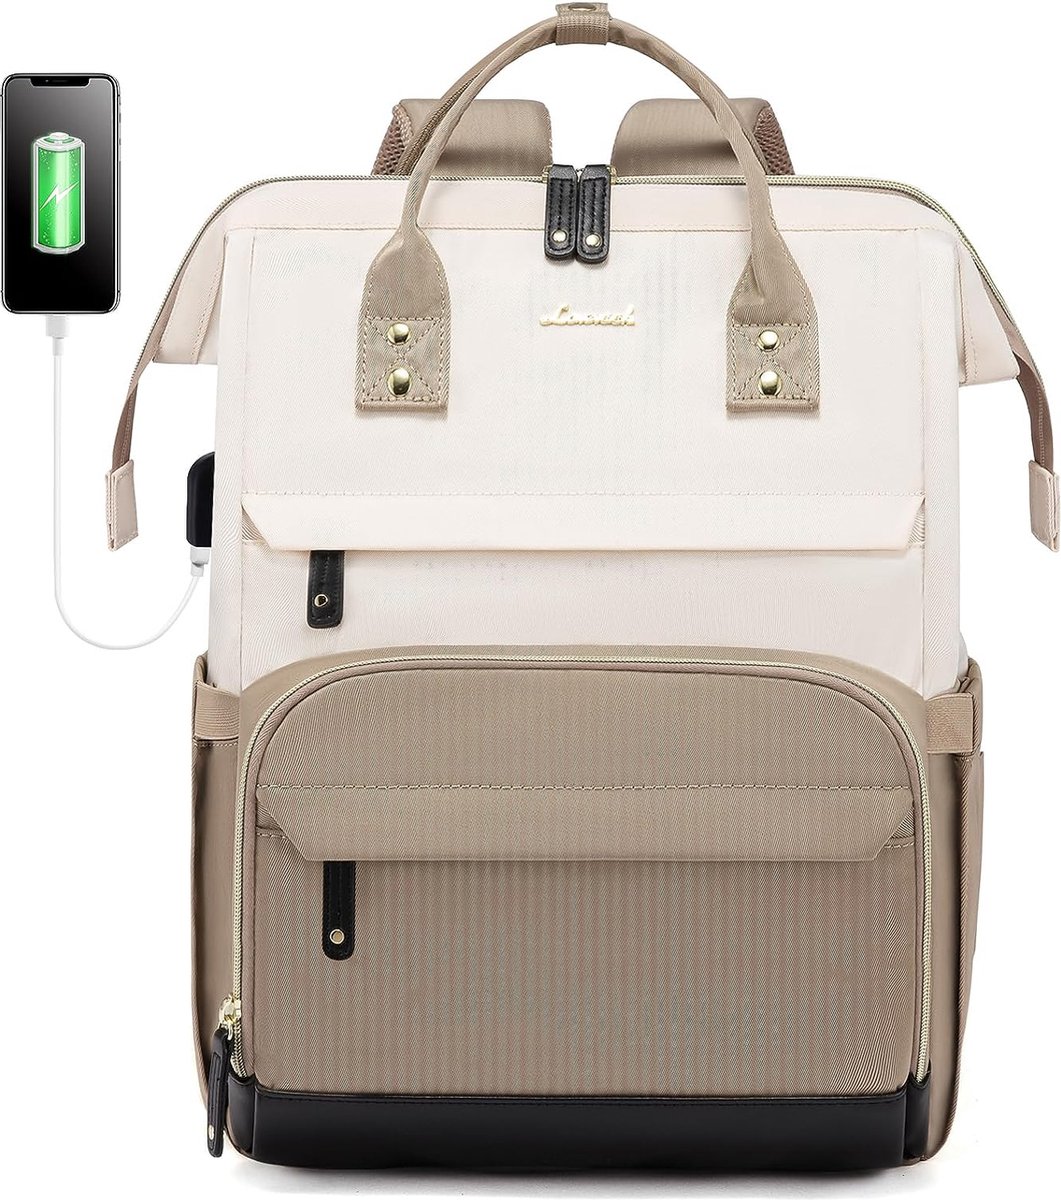 Laptop rugzak 15.6 inch - Beige - USB-oplaadpoort - Rugtas voor volwassenen en tieners - Waterdichte laptoptas